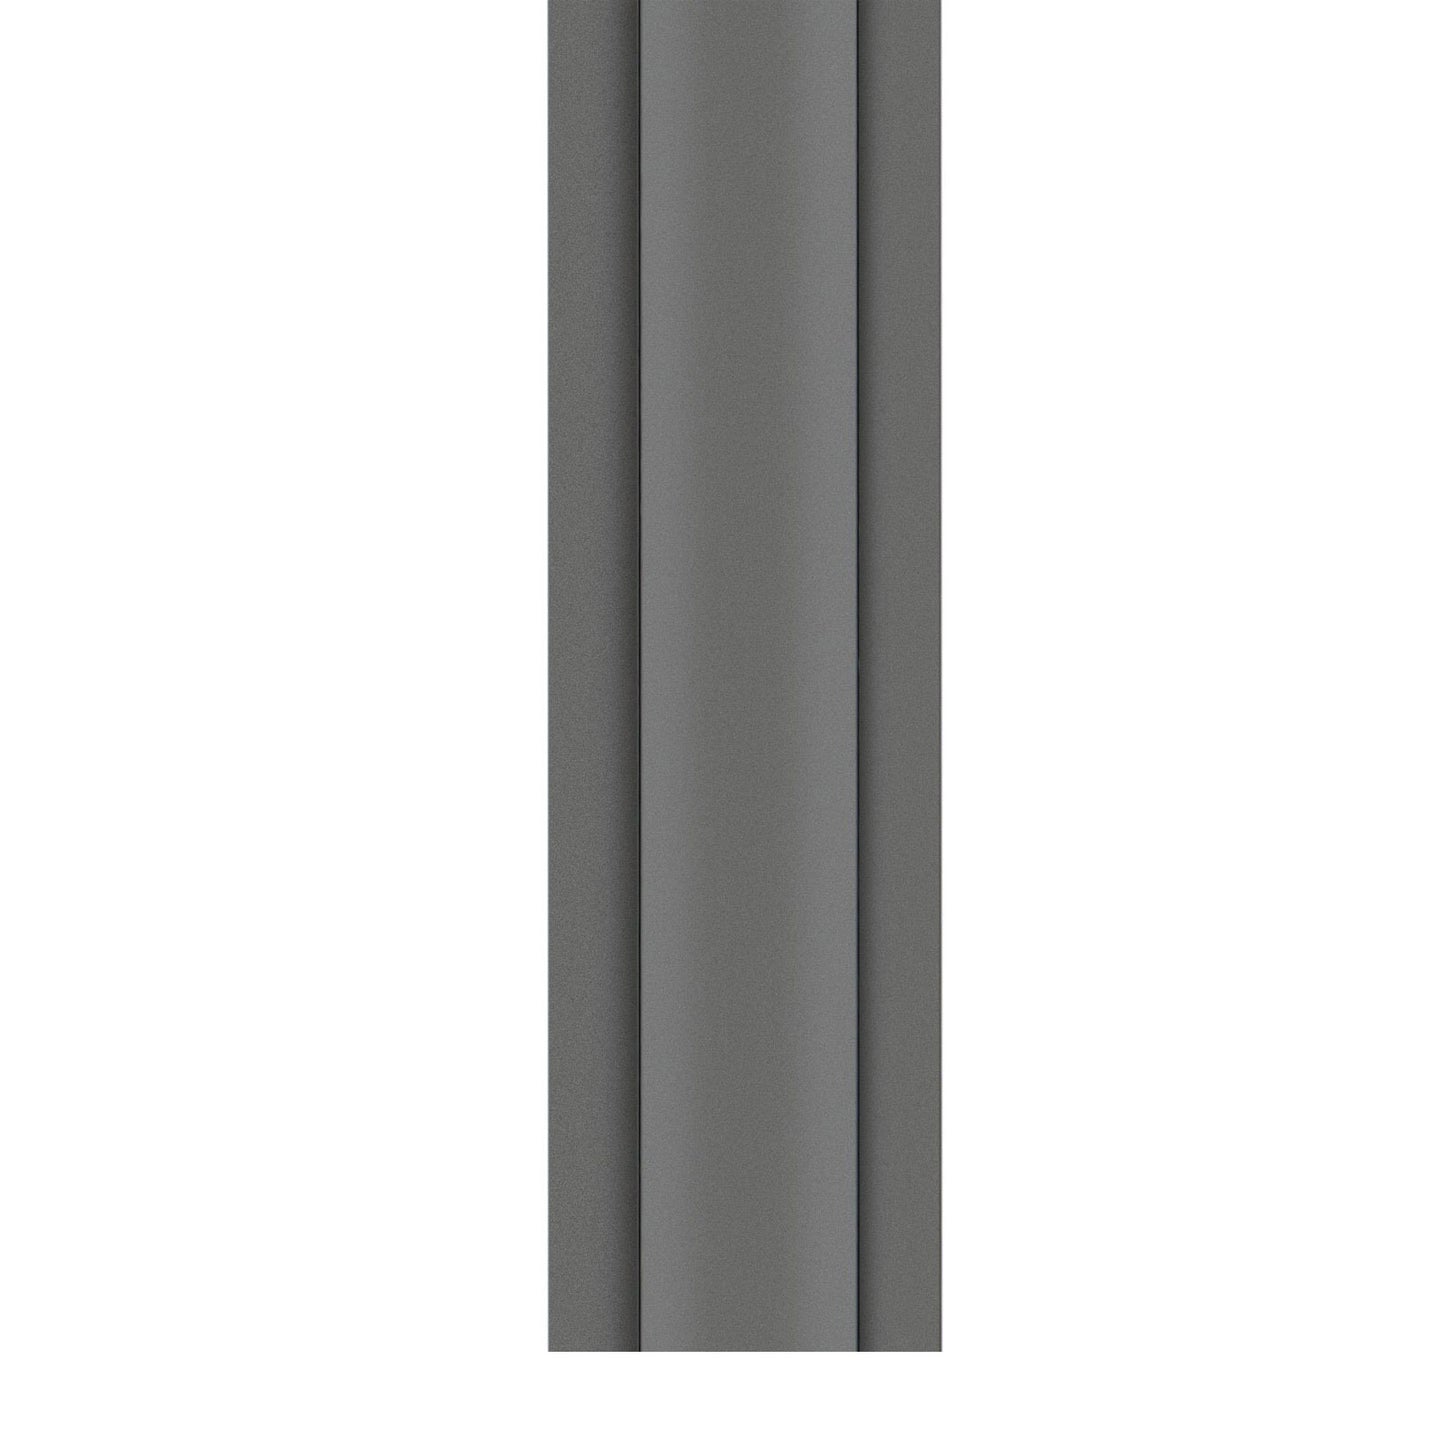 Belkin® 6' Cord Concealer, Gray